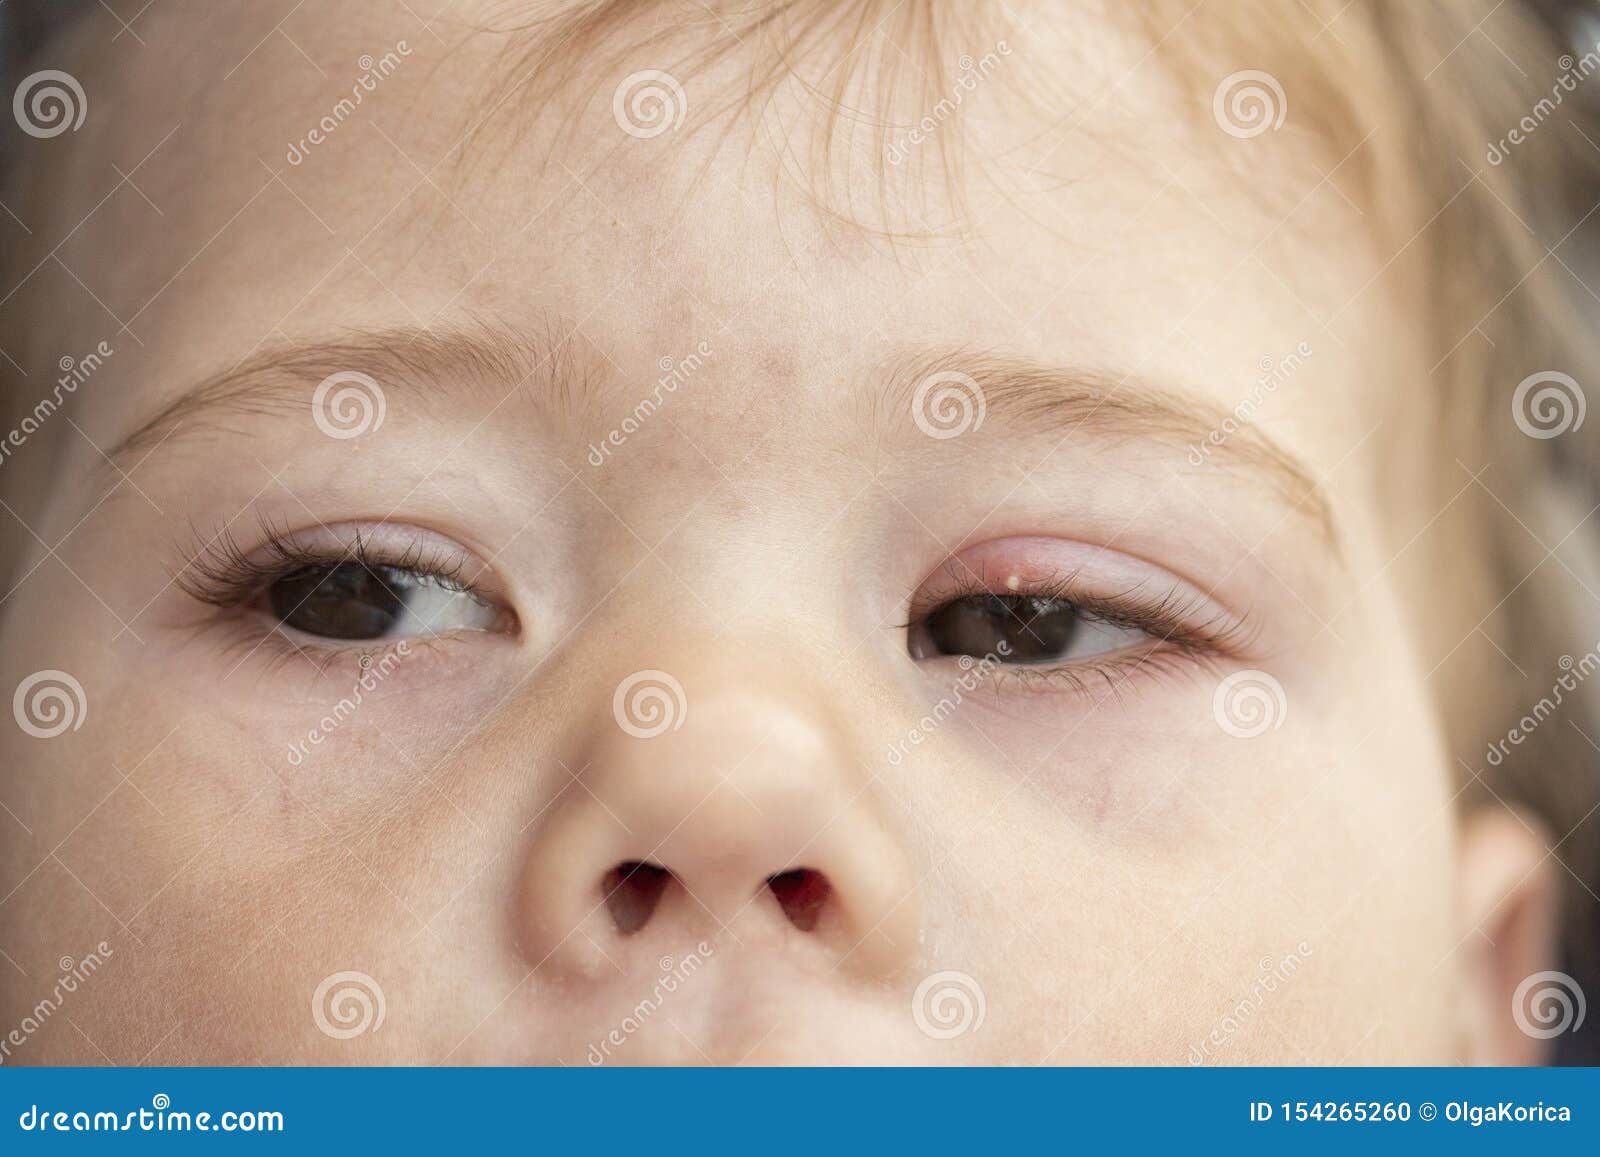 Weisser Pickel Auf Dem Oberen Augenlid Des Auges Milium Entzundung Des Auges Eines Kleinen Babykindes Bindehautentzundung Milium Stockfoto Bild Von Milium Weisser